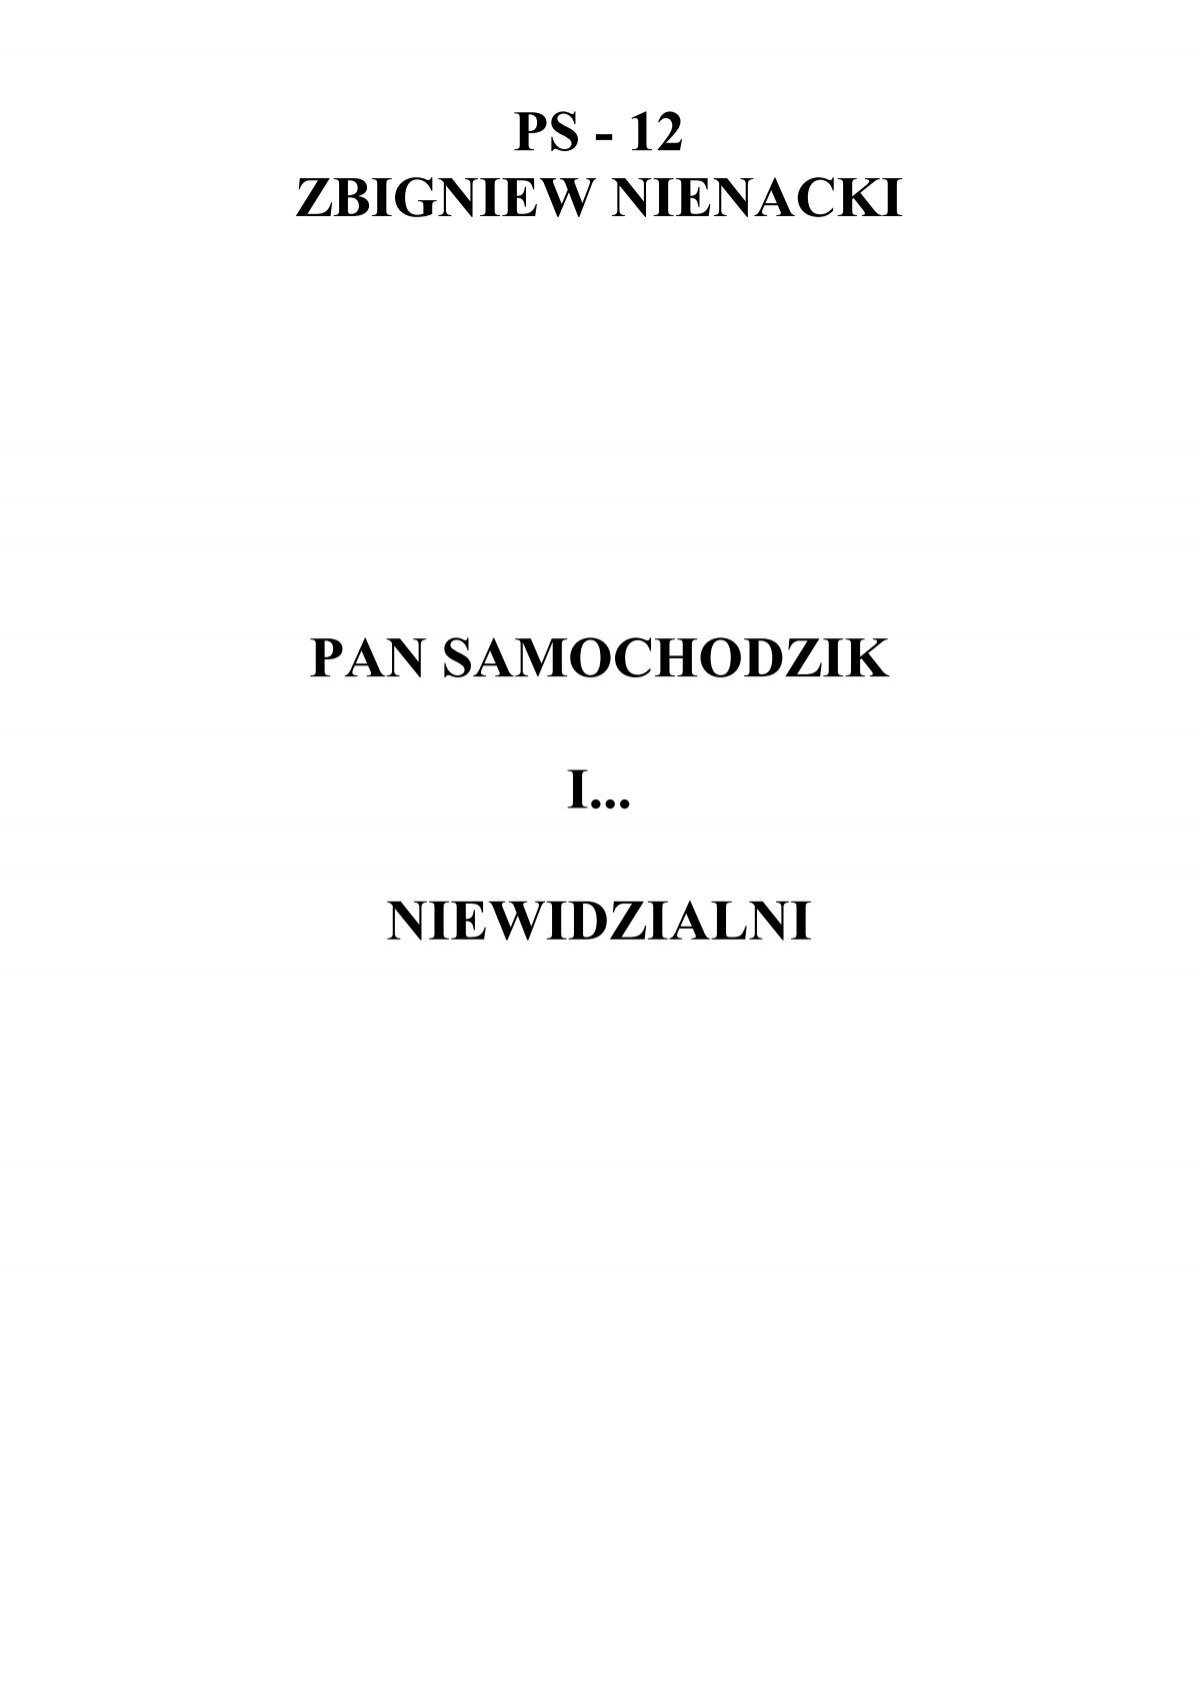 12 - Pan Samochodzik I Niewidzialni - Zbigniew Nienacki